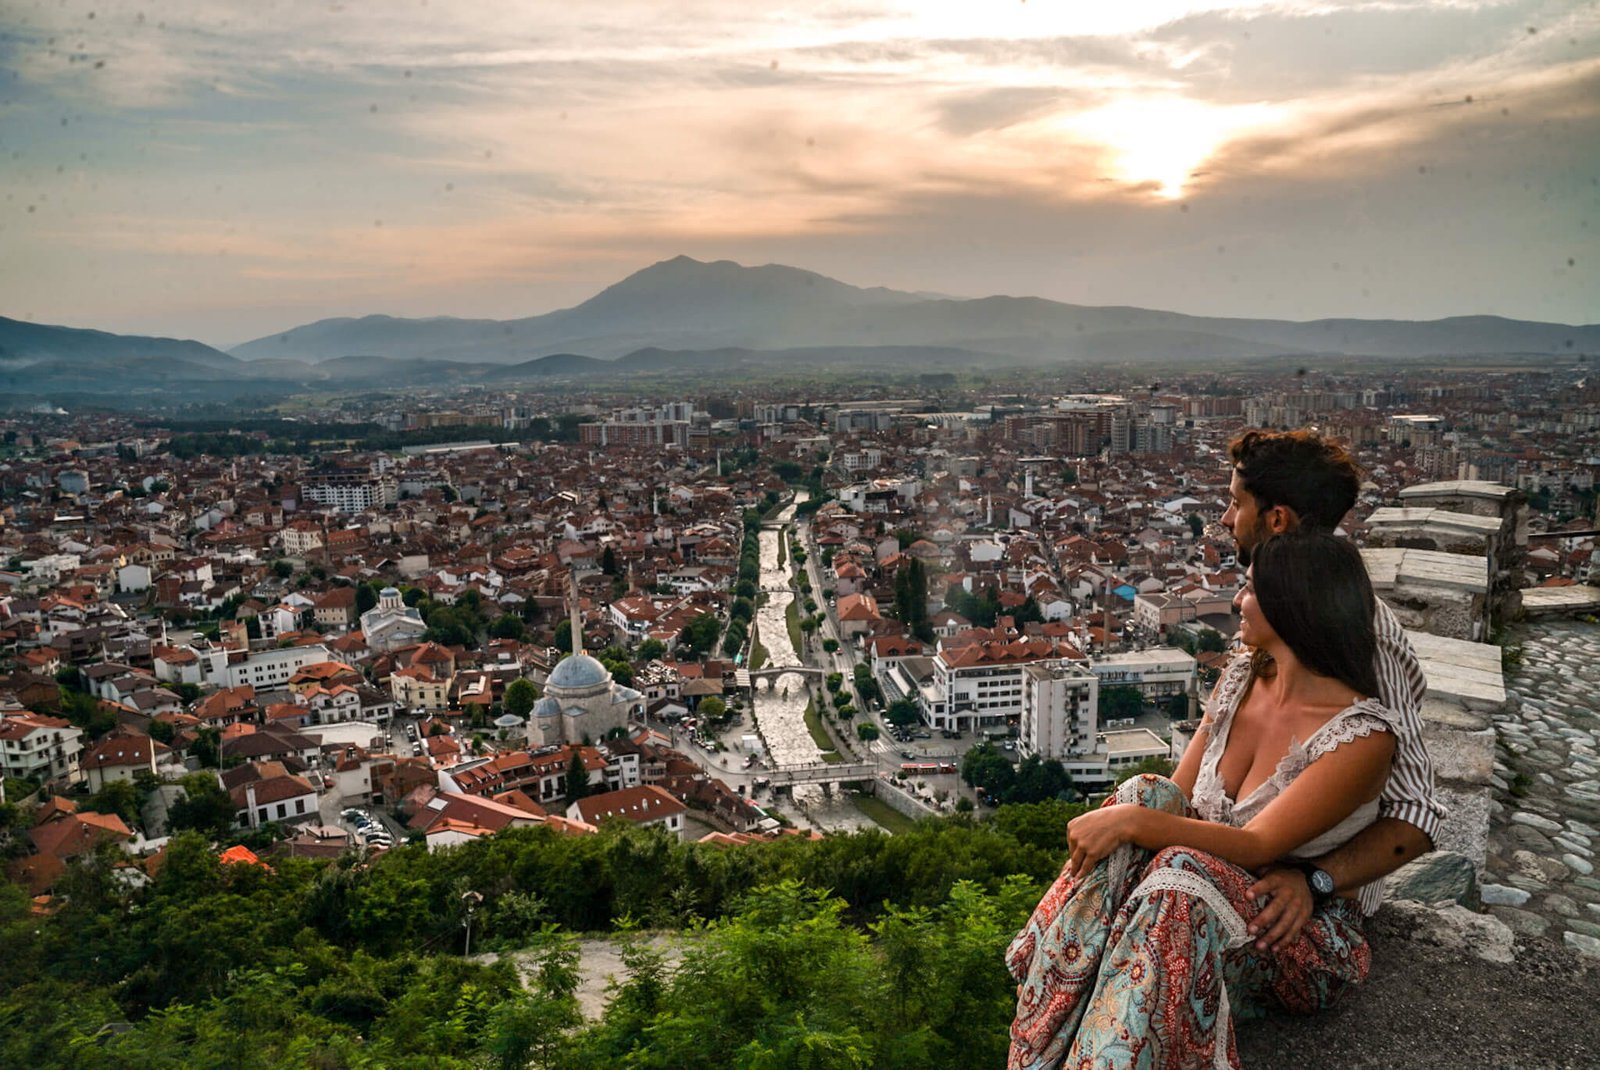 Prizren, Kosovo a country under the radar